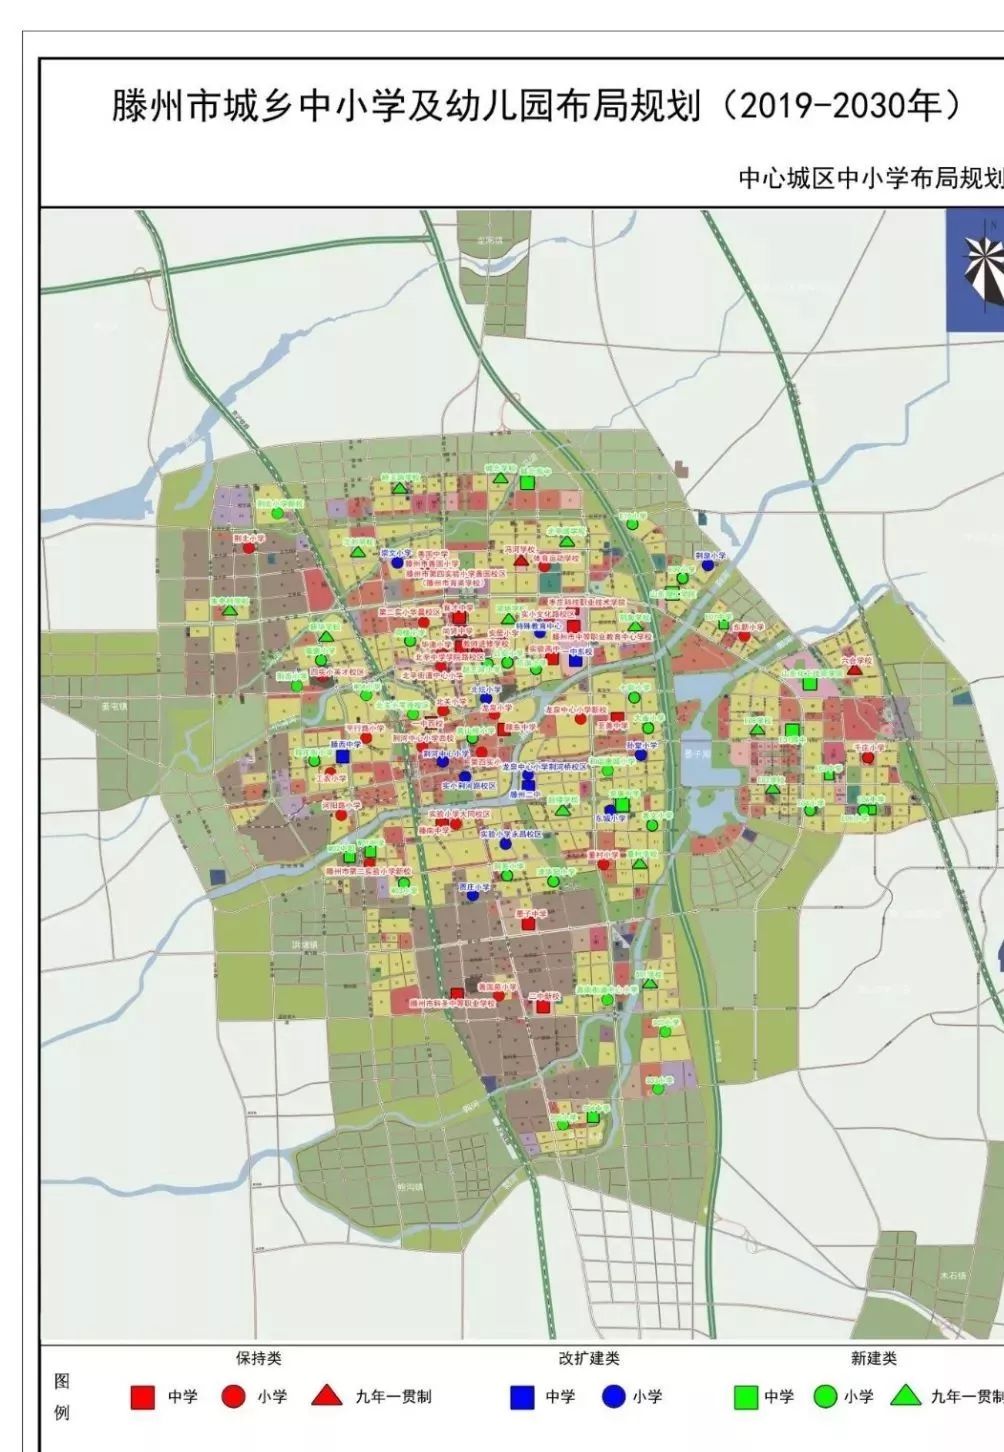 滕州街道划分范围地图图片